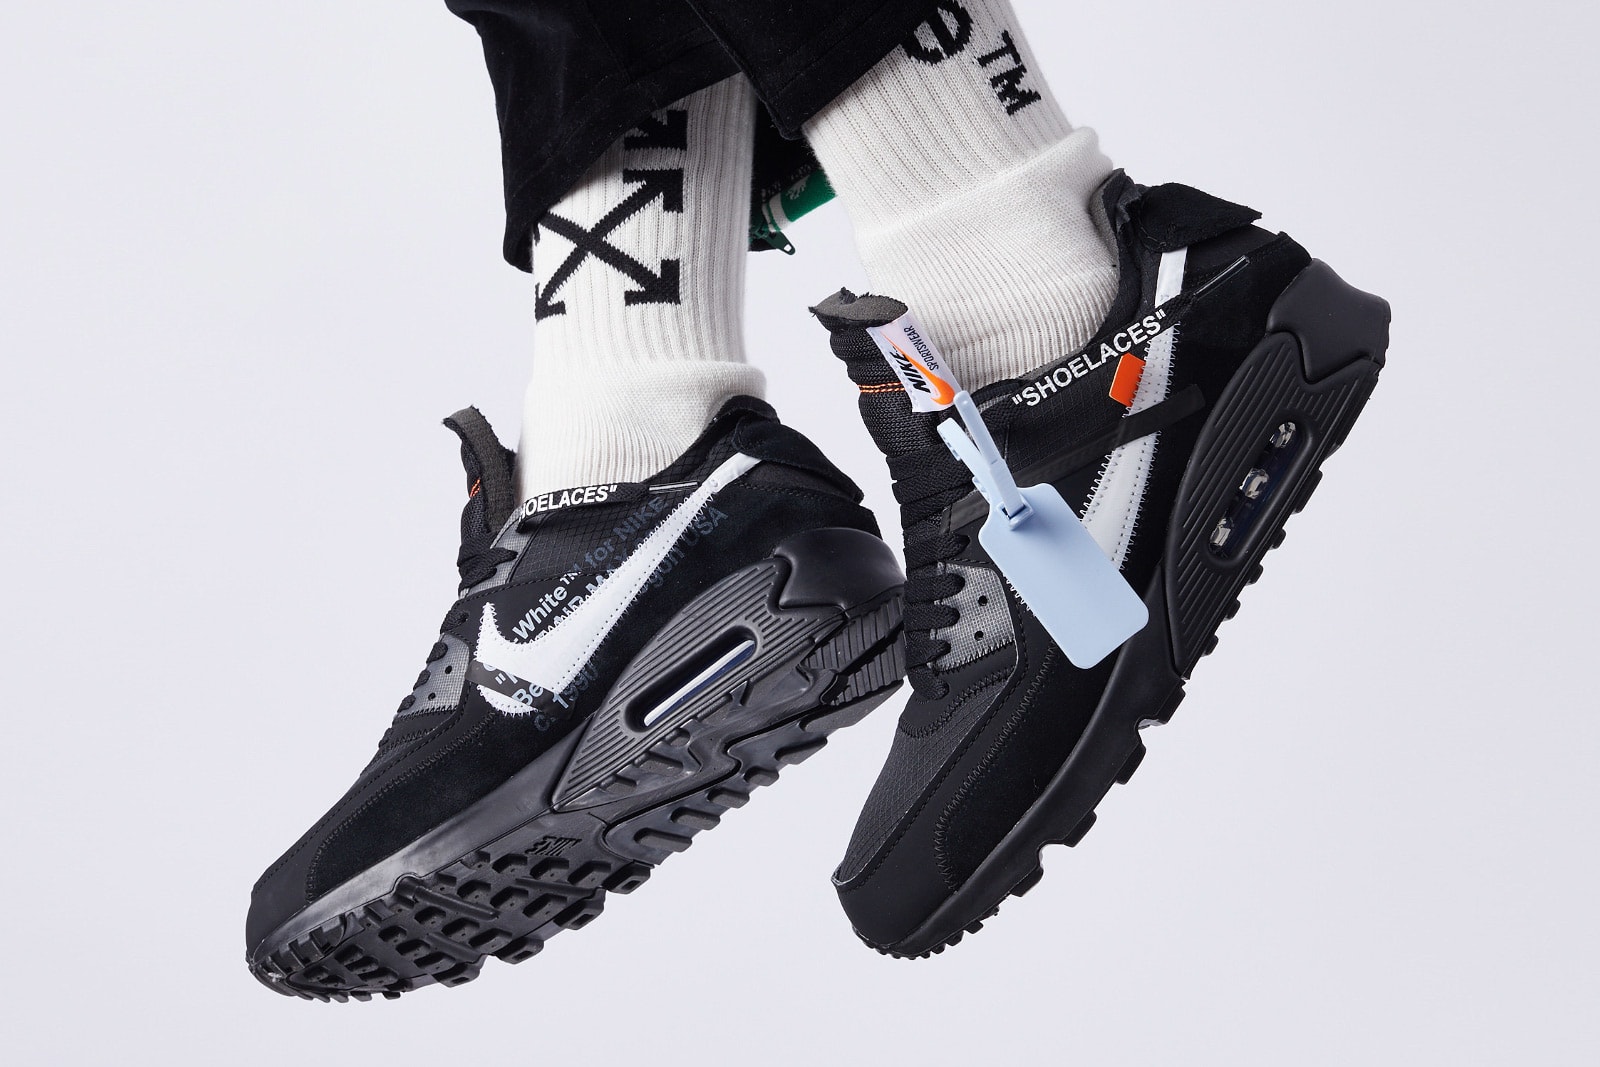 Nike Air Max 90 'Black' and 'Desert Ore 